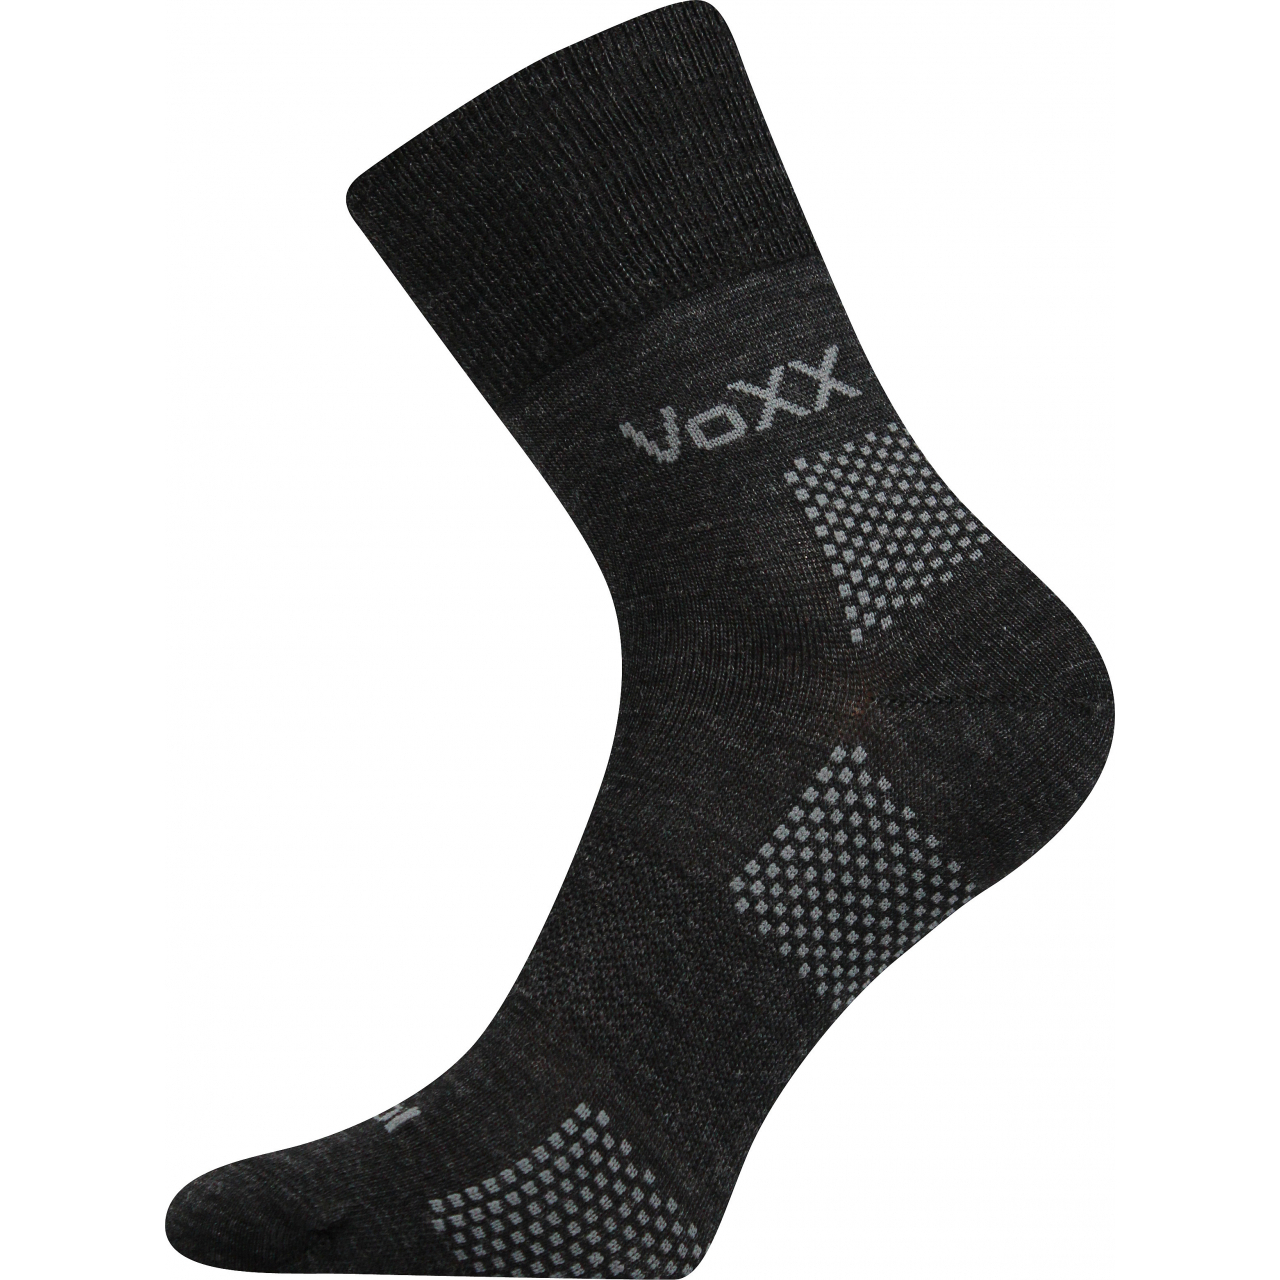 Ponožky funkční unisex Voxx Orionis ThermoCool - tmavě šedé, 39-42